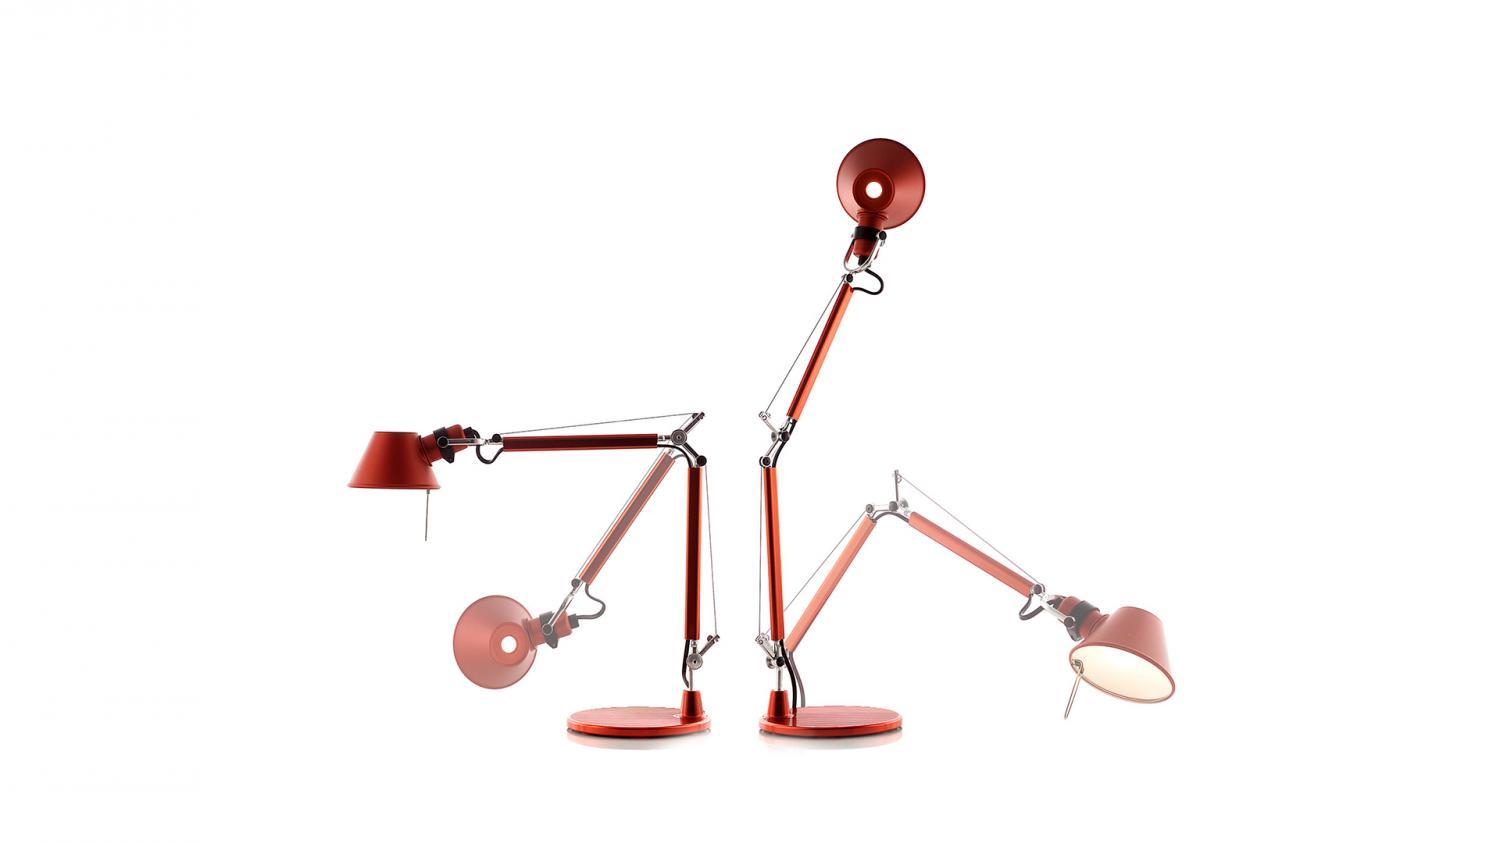 Tolomeo Micro stolní lampa - hliník - tělo lampy + základna - ARTEMIDE